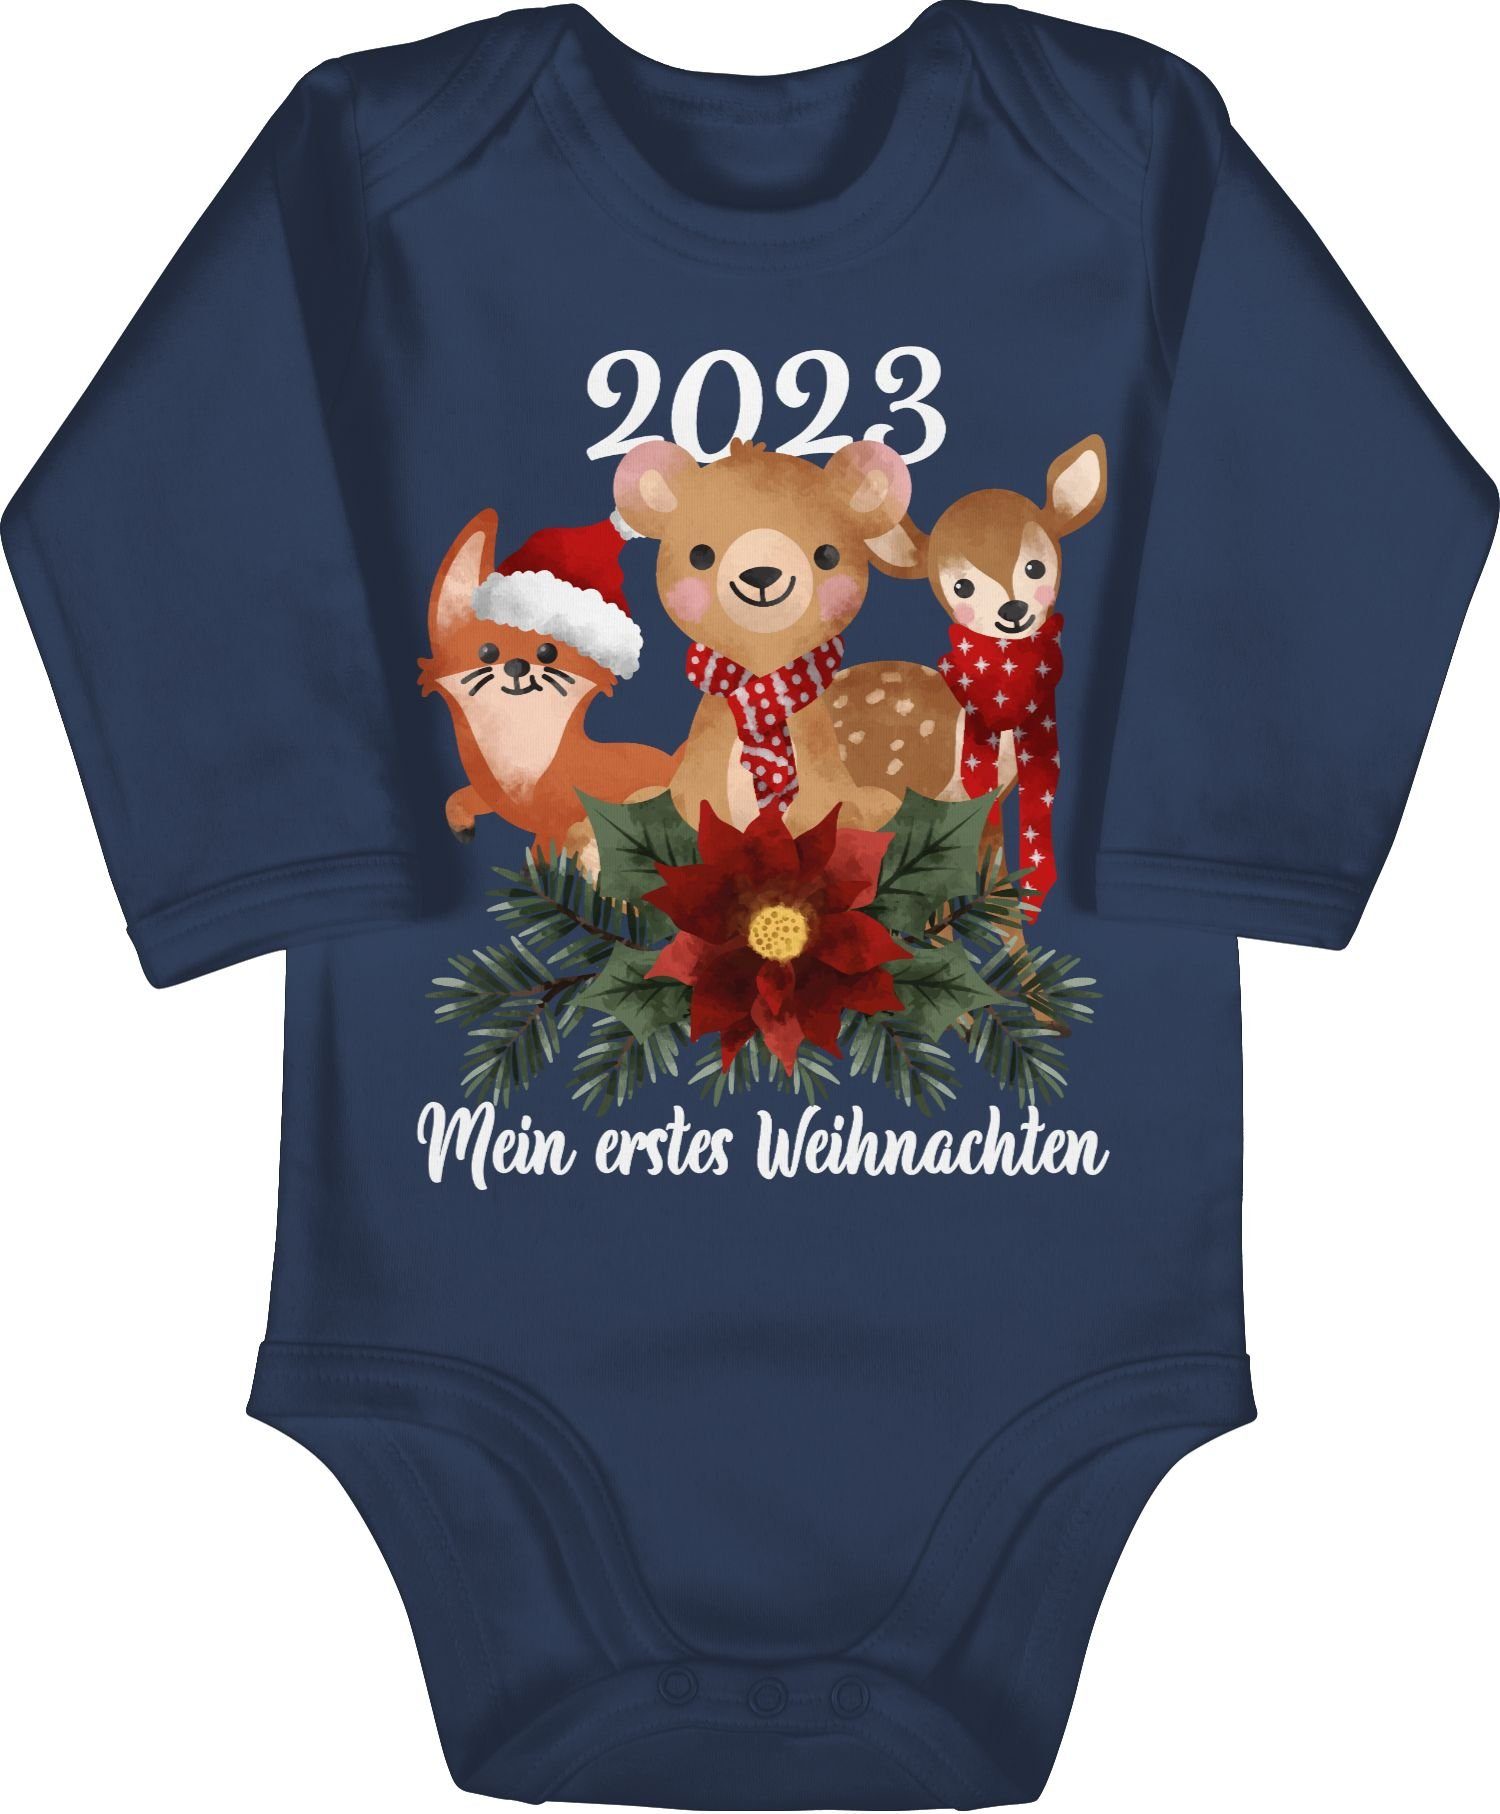 Shirtracer Shirtbody 2023 Mein erstes Weihnachten mit süßen Tieren - weiß Weihnachten Kleidung Baby 1 Navy Blau